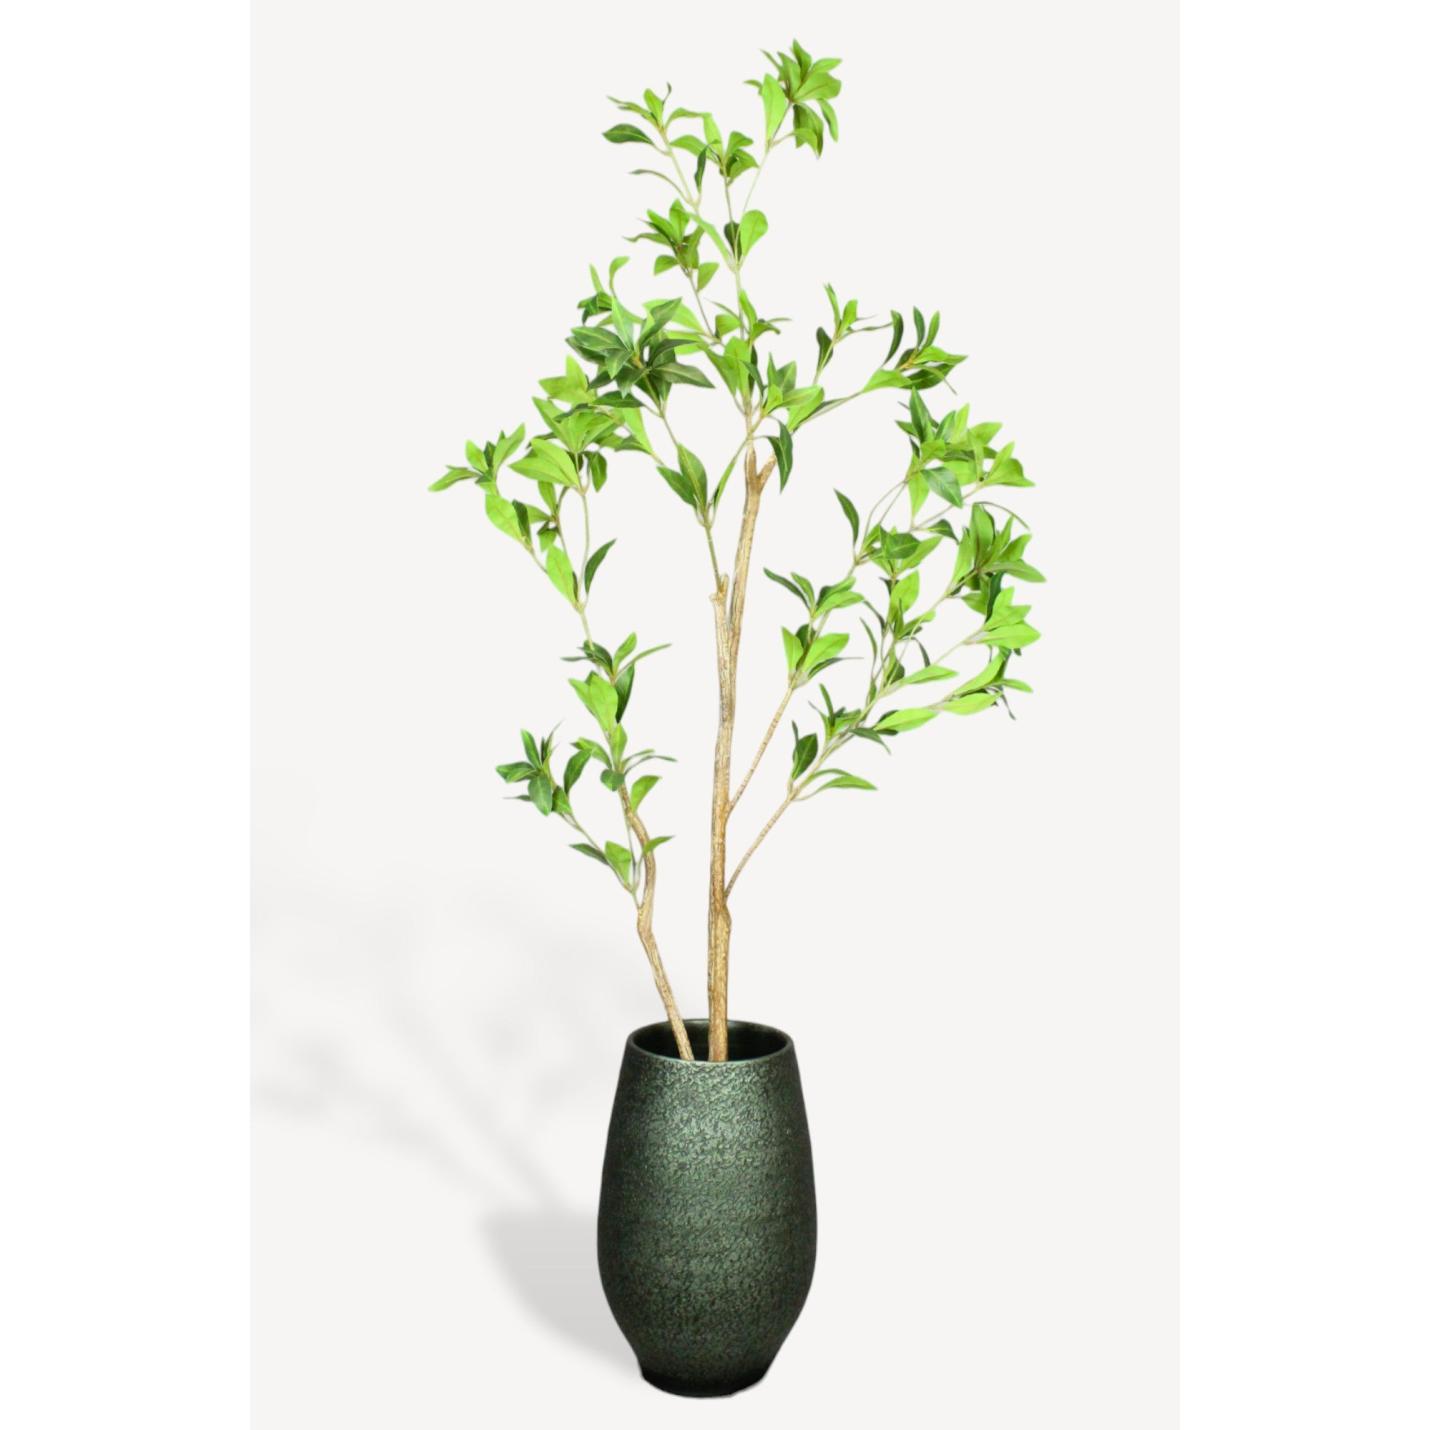 Tea Leaf Kunstplant - 120 cm - Collectie van hoogwaardige kunstplanten en zijden bloemboeketten, inclusief kunstbloemen en nepplanten voor interieurdecoratie, perfect voor een onderhoudsvrij, groen thuis of kantoor.